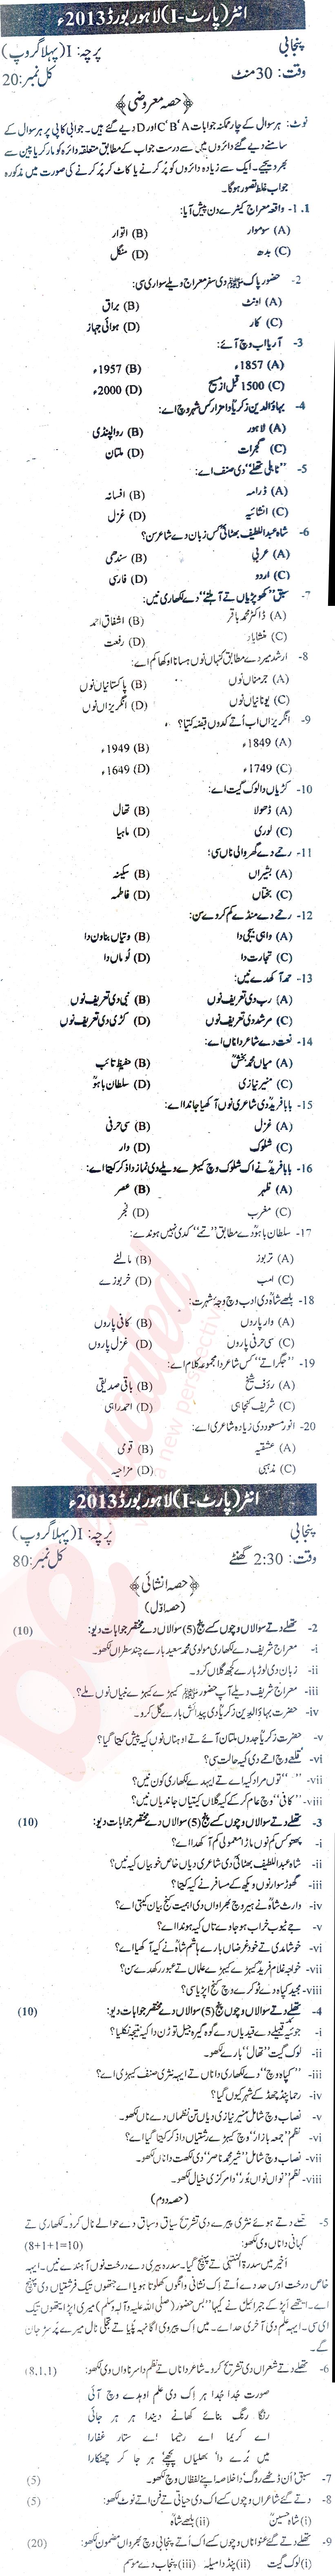 Punjabi FA Part 1 Past Paper Group 1 BISE Lahore 2013